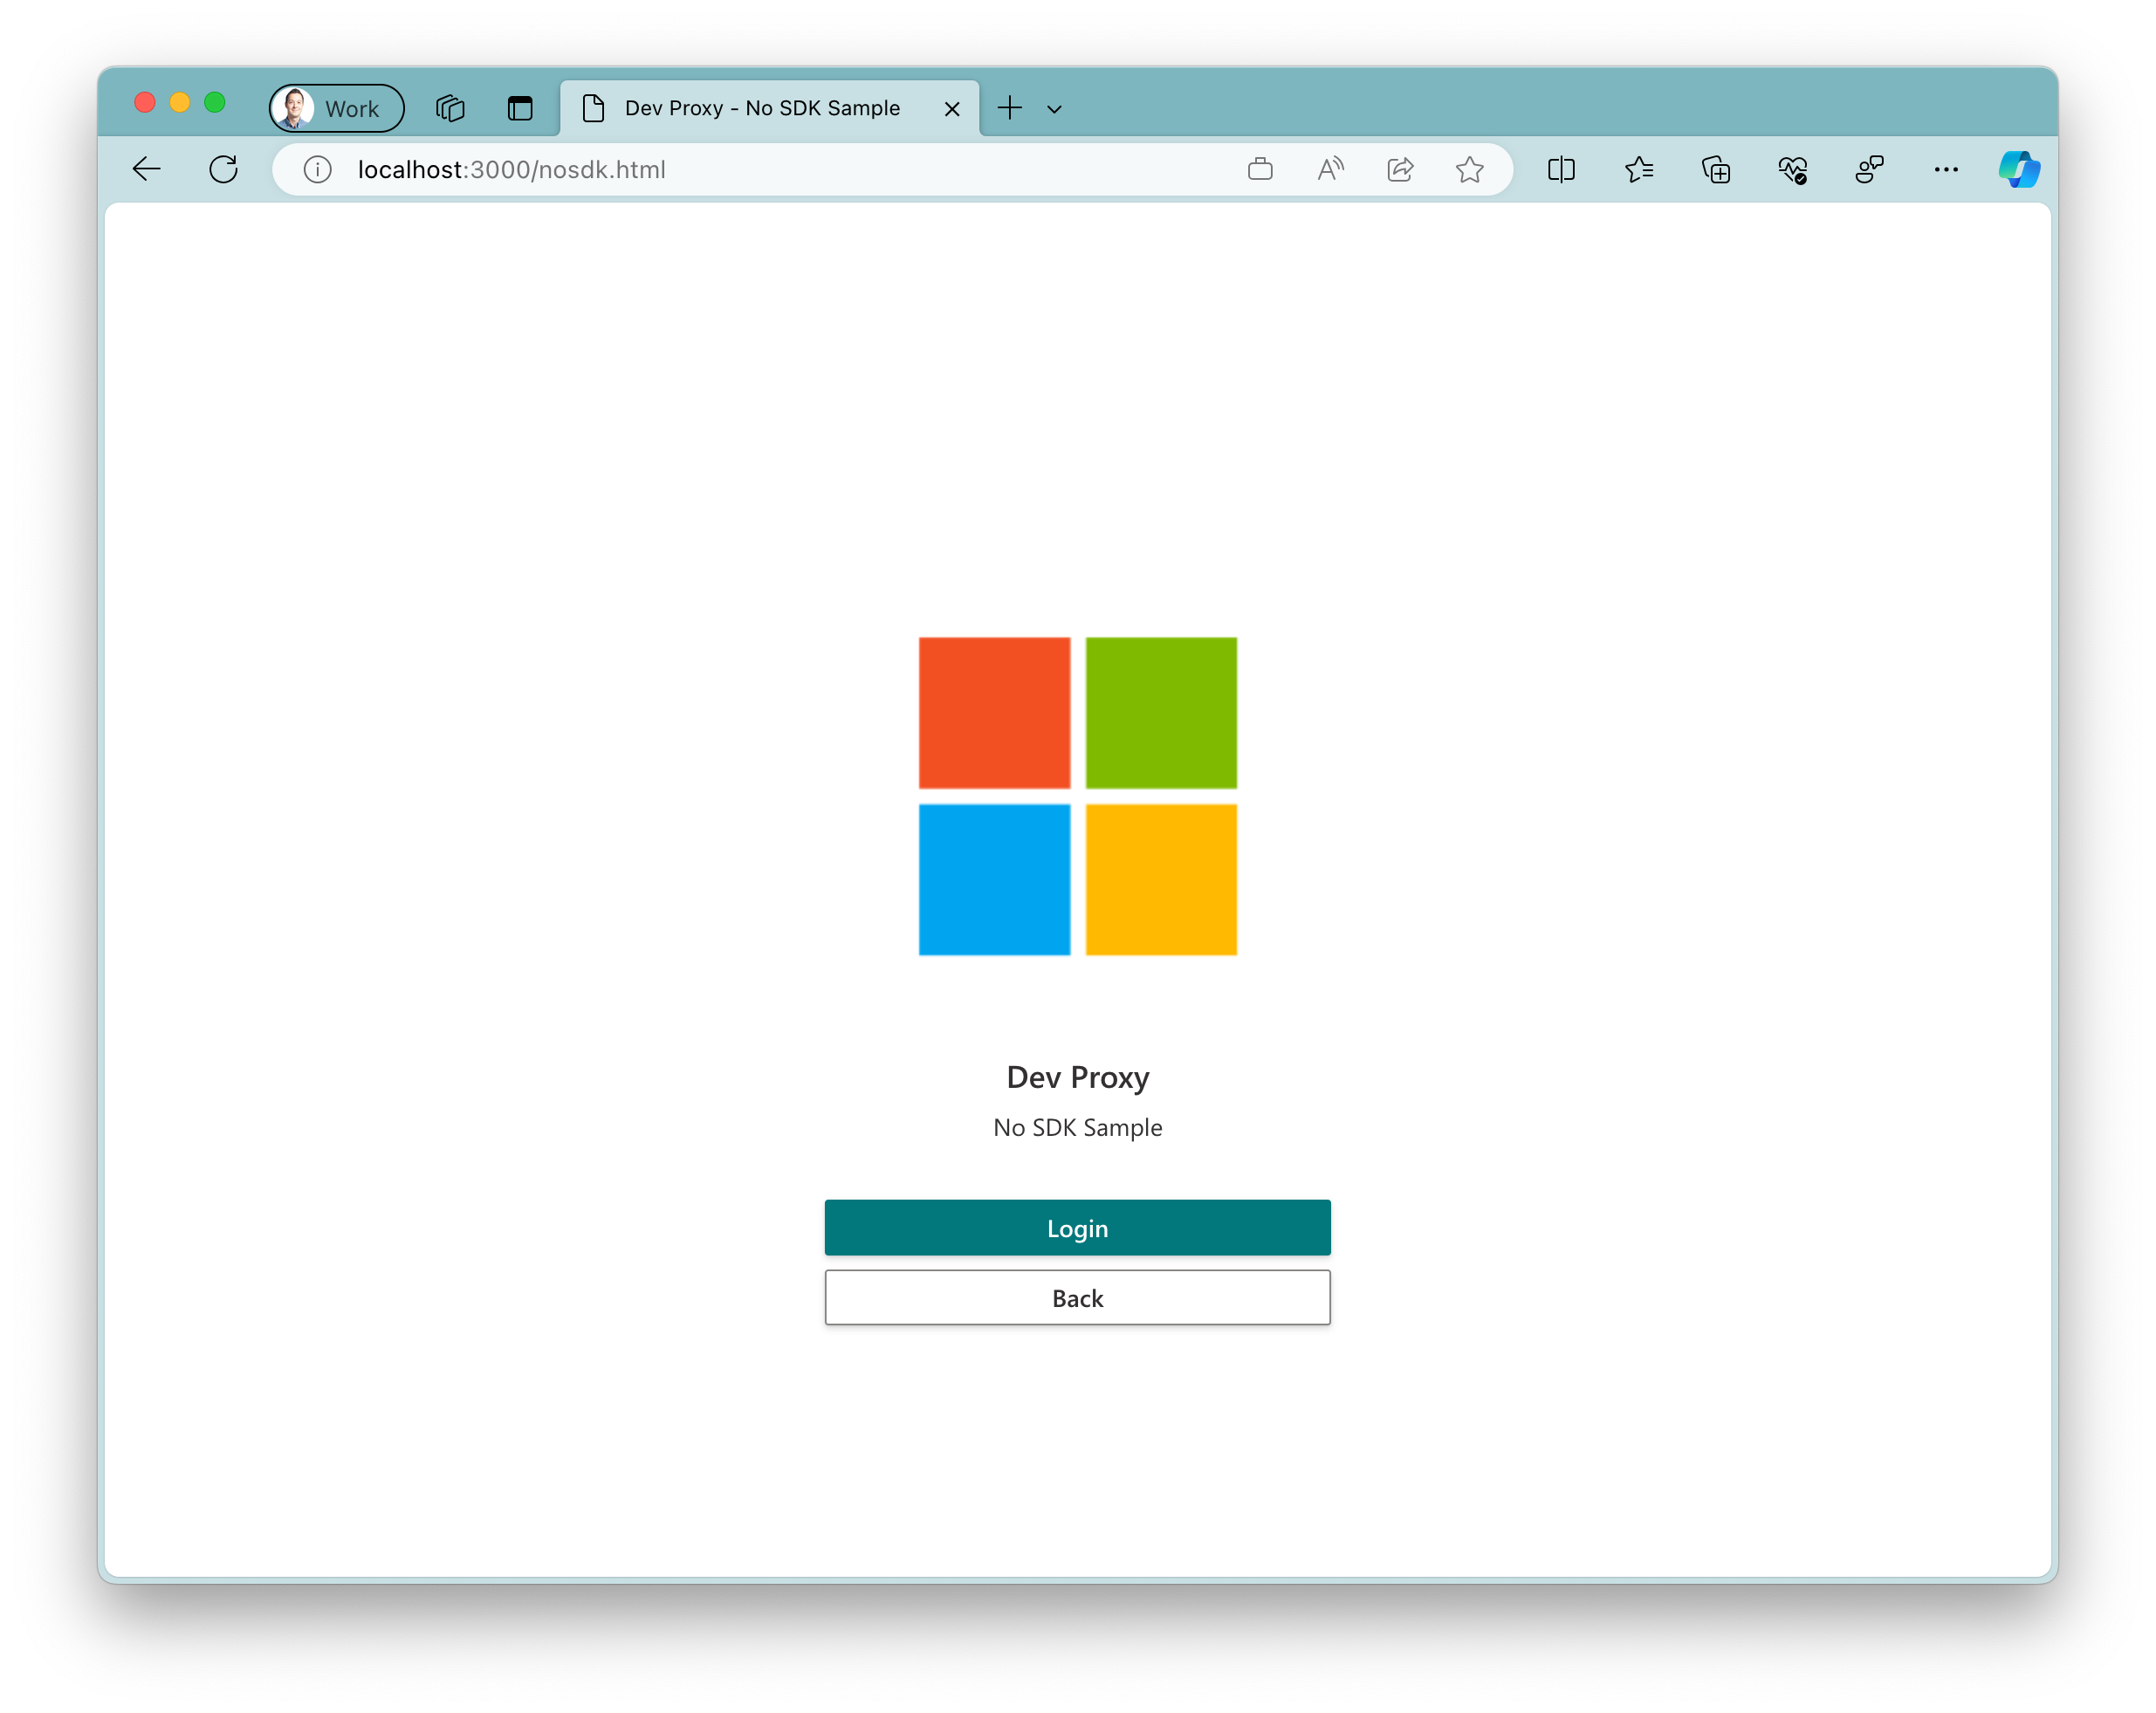 Captura de tela do aplicativo de exemplo em execução no navegador Microsoft Edge no Windows 11. O aplicativo mostra um logotipo grande da Microsoft com dois botões abaixo dele. Um botão primário com o texto 'Logon' e um botão secundário com o texto 'Voltar'.